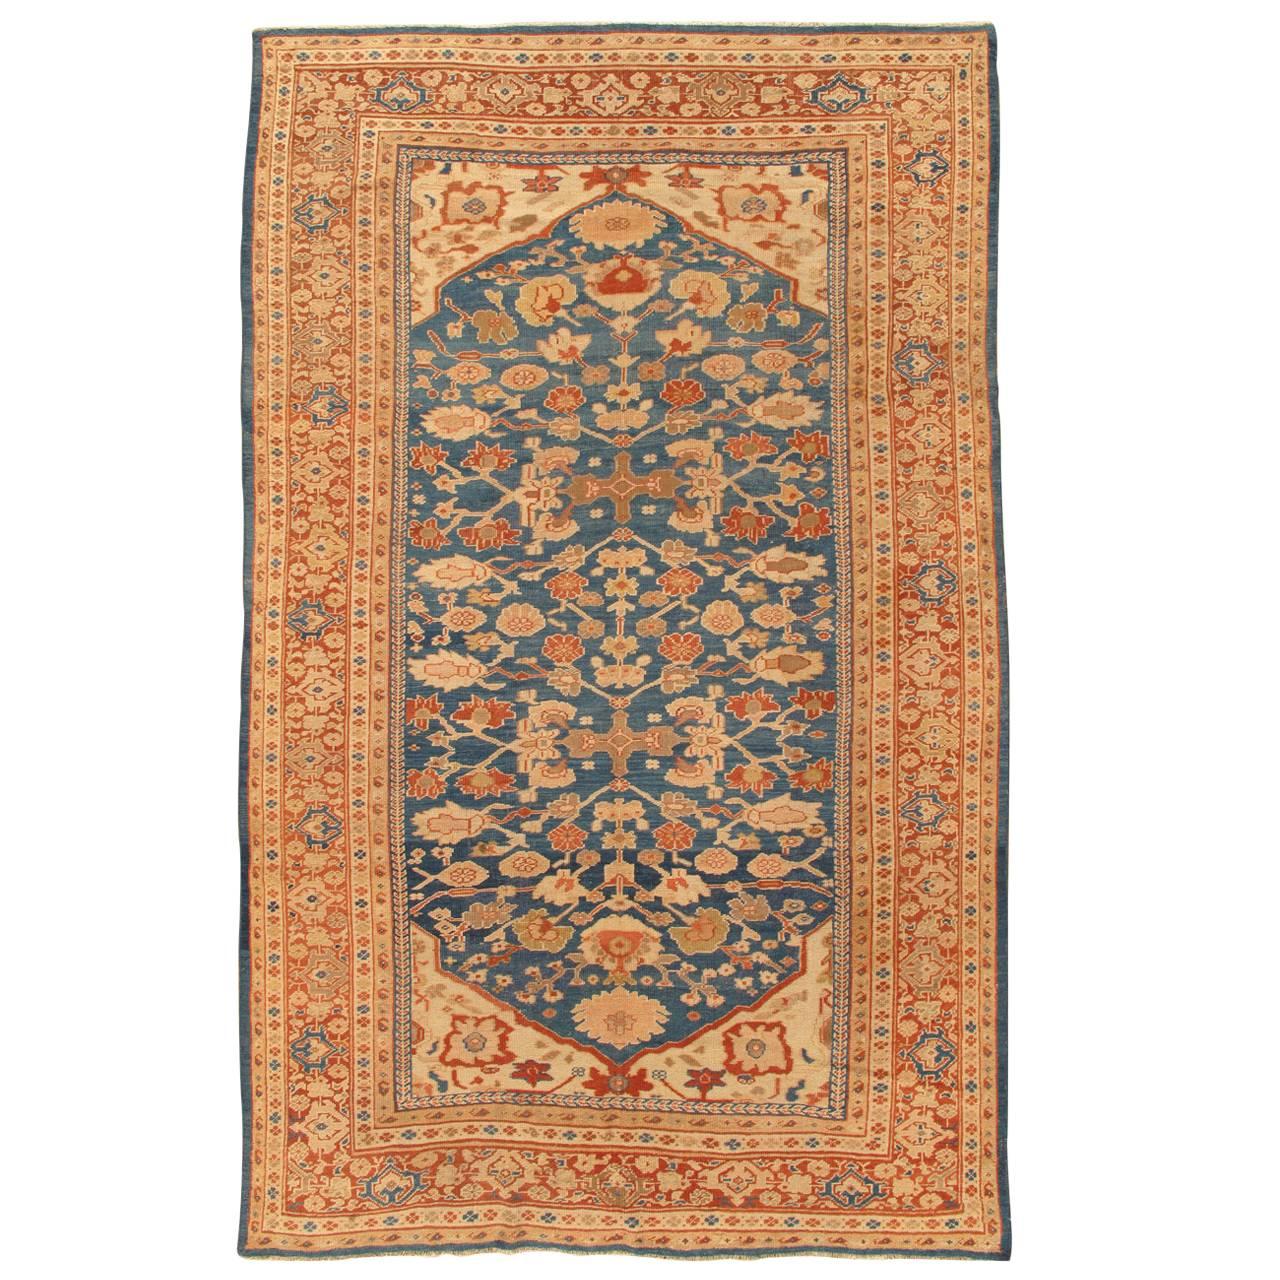 Tapis persan ancien Sultanabad, tapis oriental fait à la main, bleu clair, terre cuite